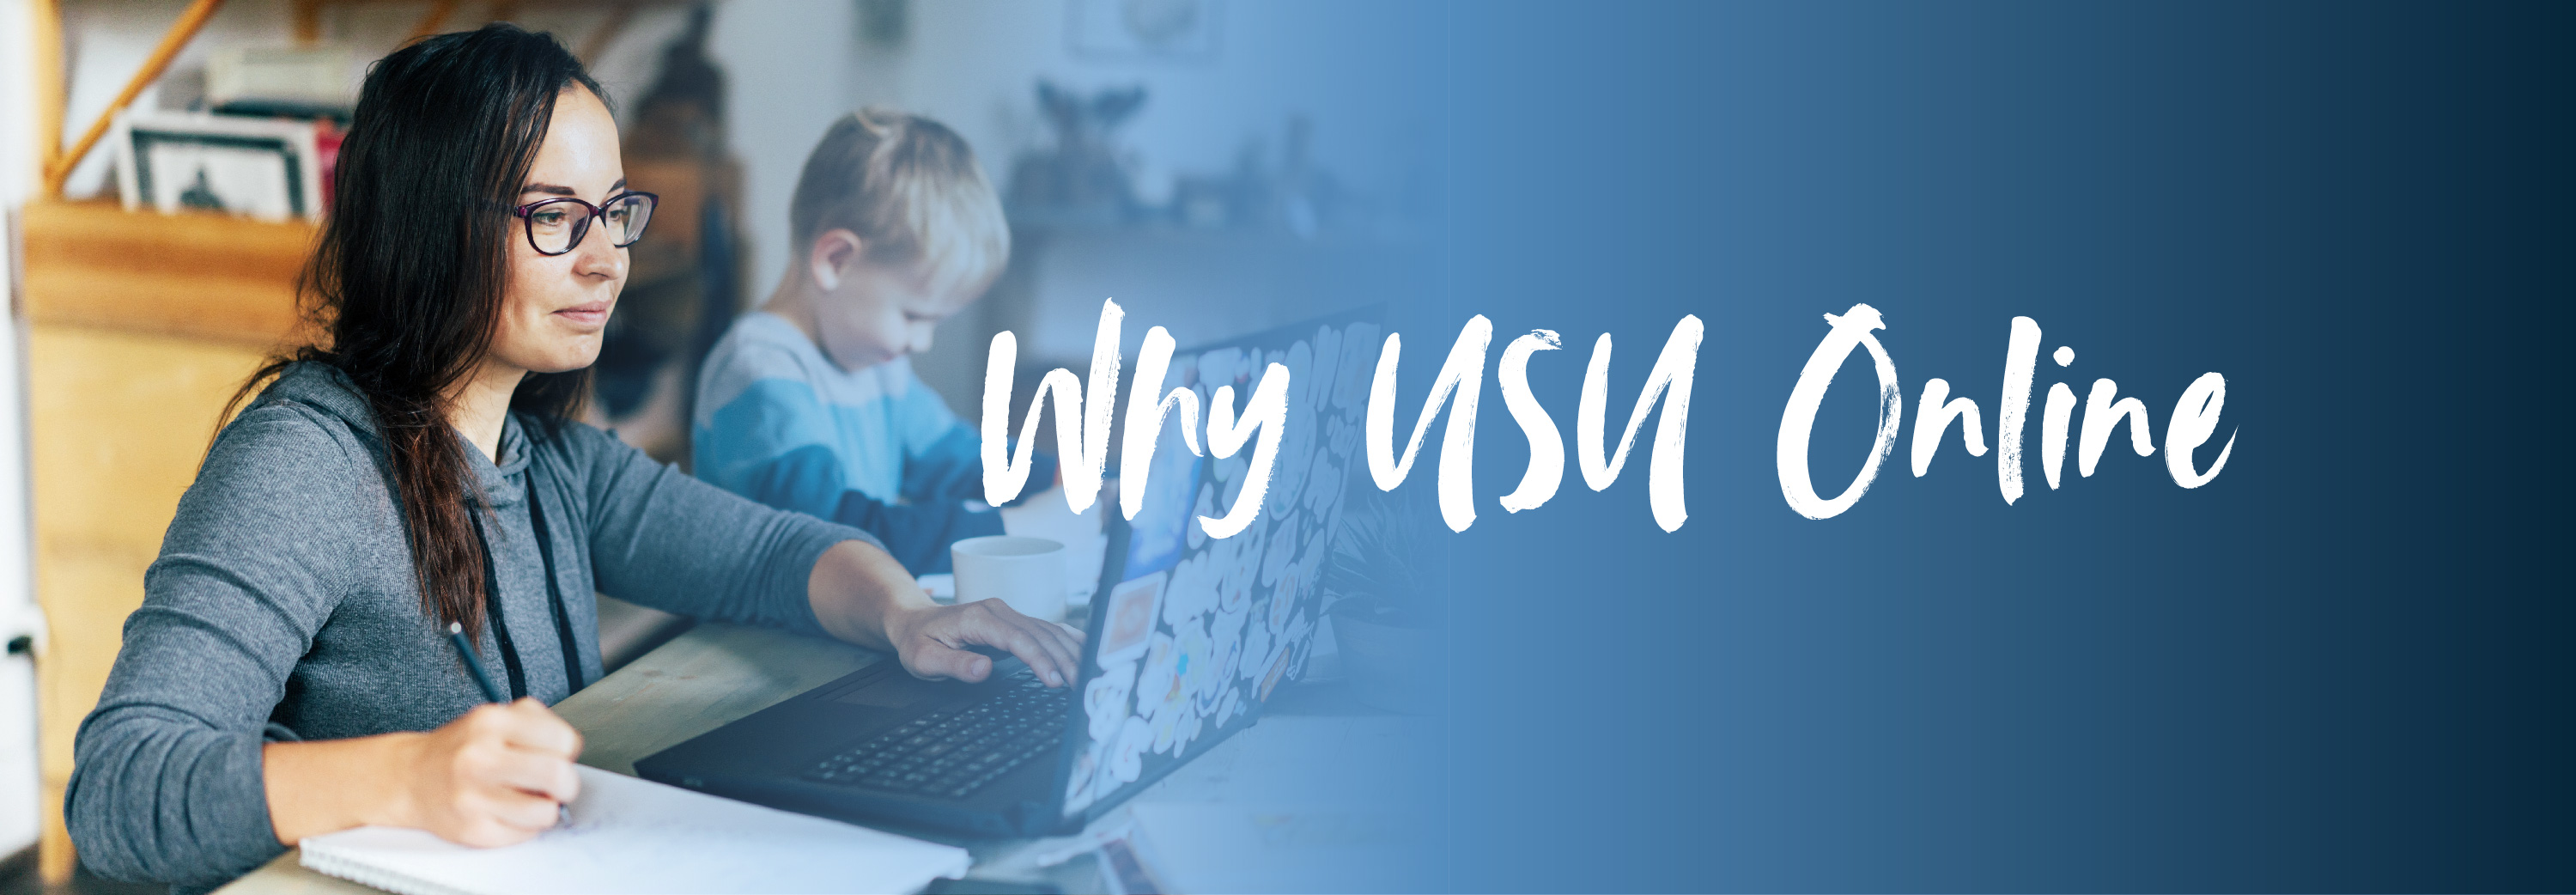 Why USU Online